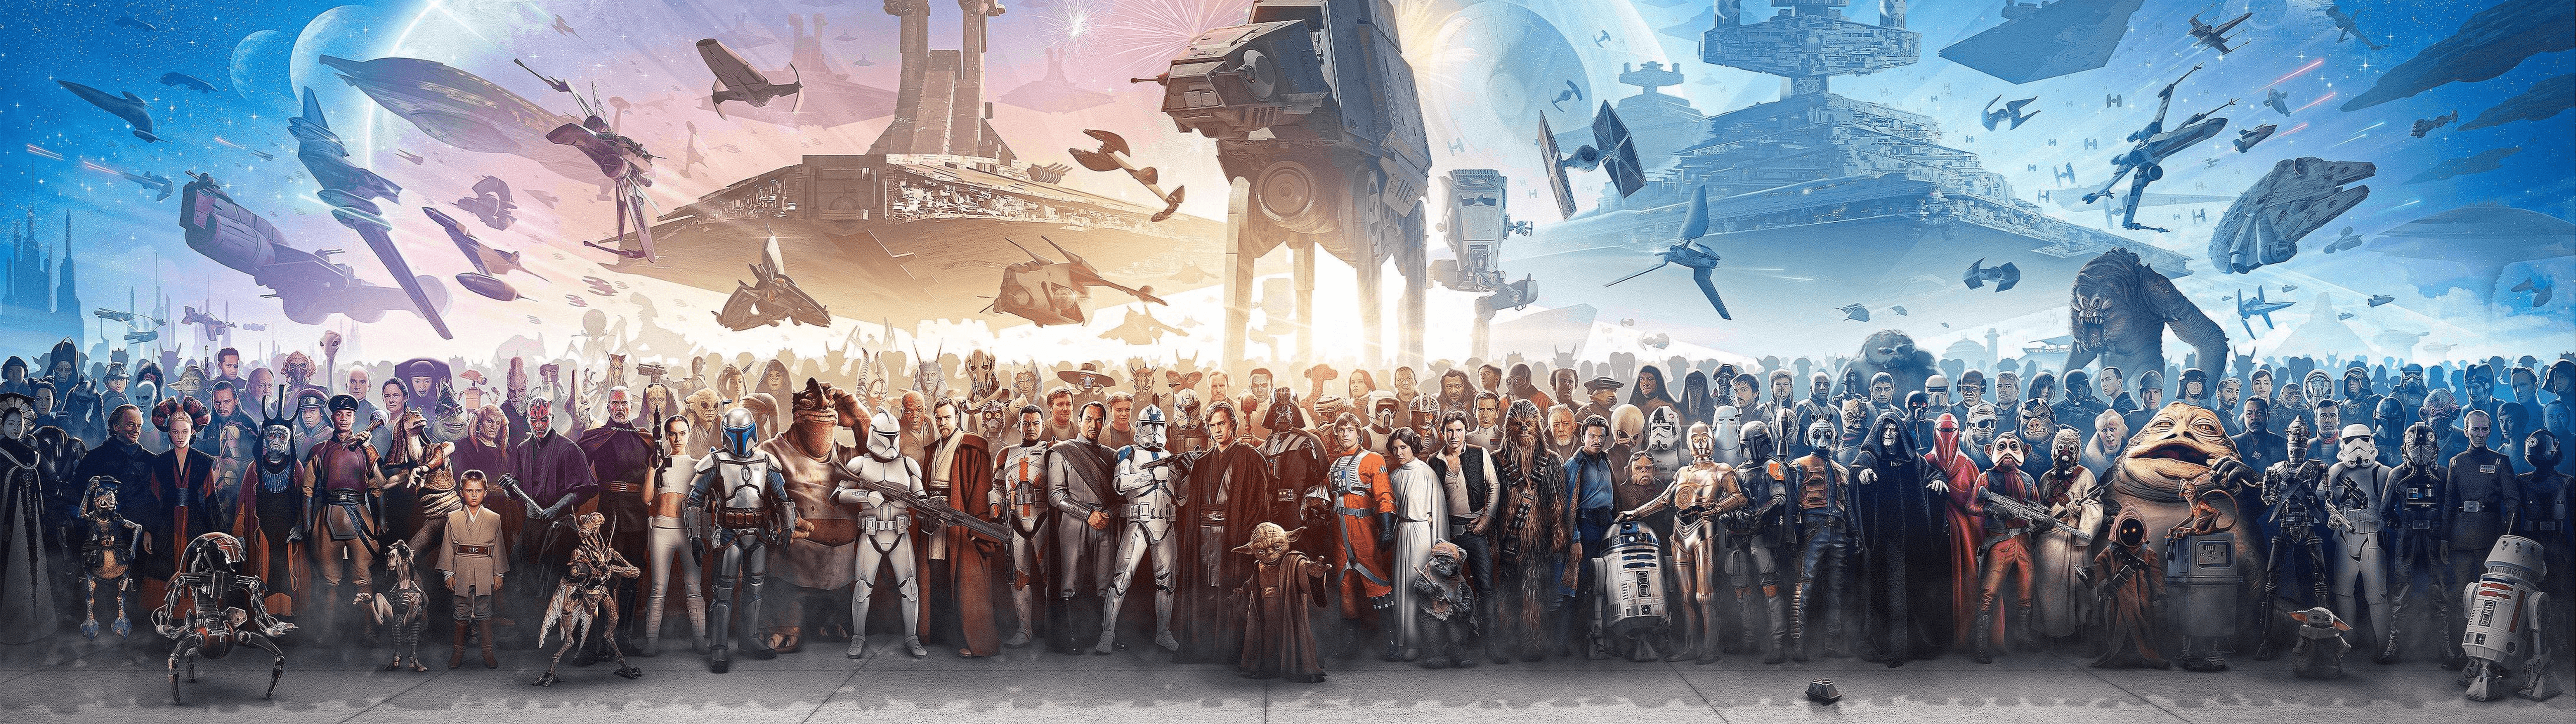 Star Wars: Cảm nhận không khí huyền thoại của vũ trụ Star Wars với hình ảnh đầy sắc màu và bí ẩn. Hãy khám phá thế giới của các Jedi và Sith, các chiến trường hấp dẫn và những con tàu vũ trụ đầy ấn tượng.